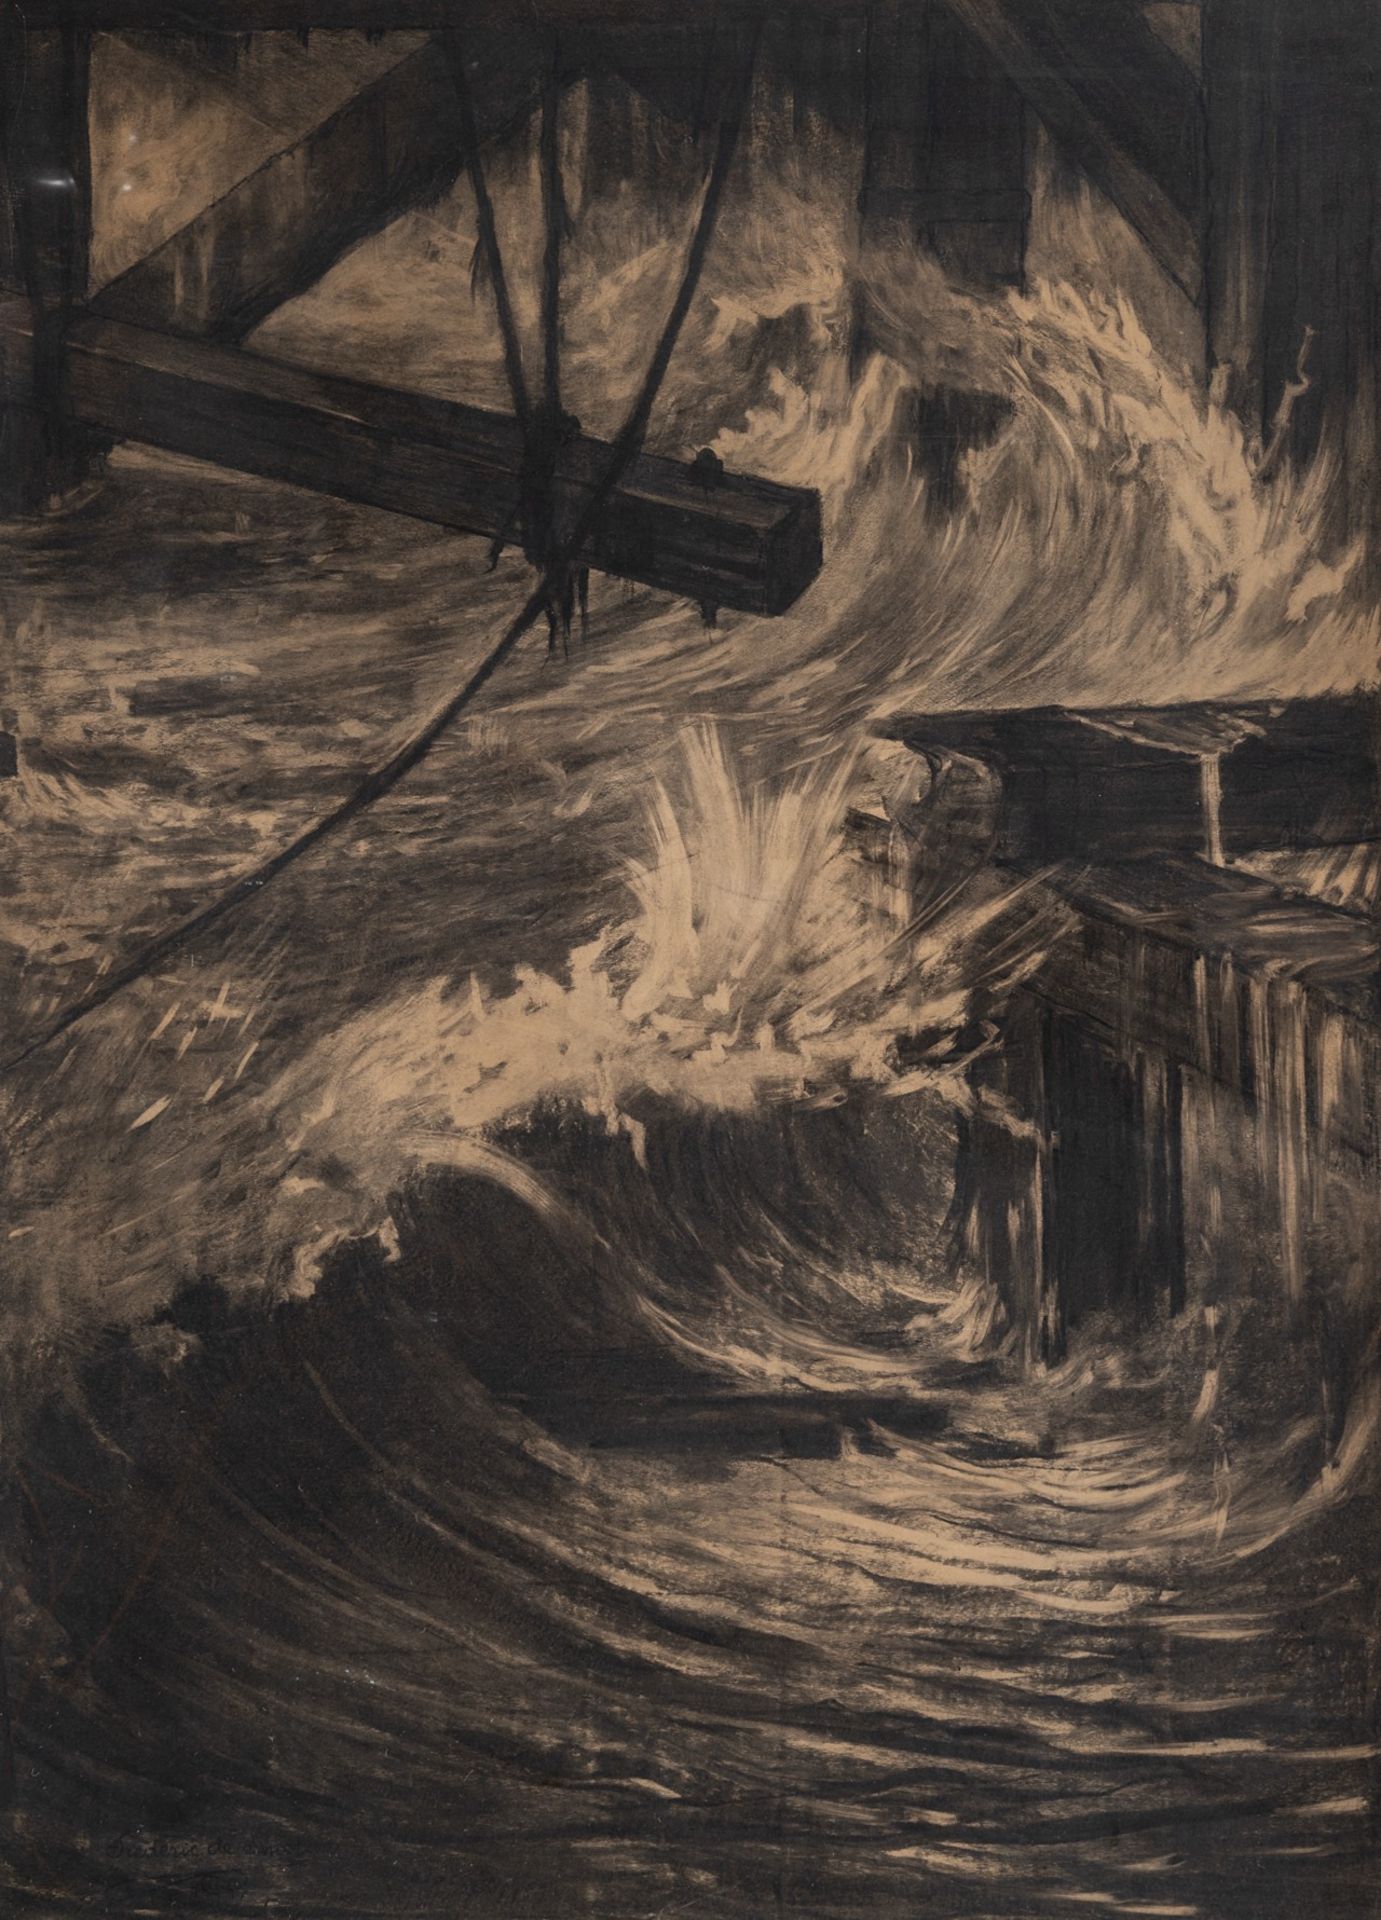 Frederic De Smet (1876-1948), Oeuvre des hommes, travail de la mer', 1925, charcoal drawing on paper